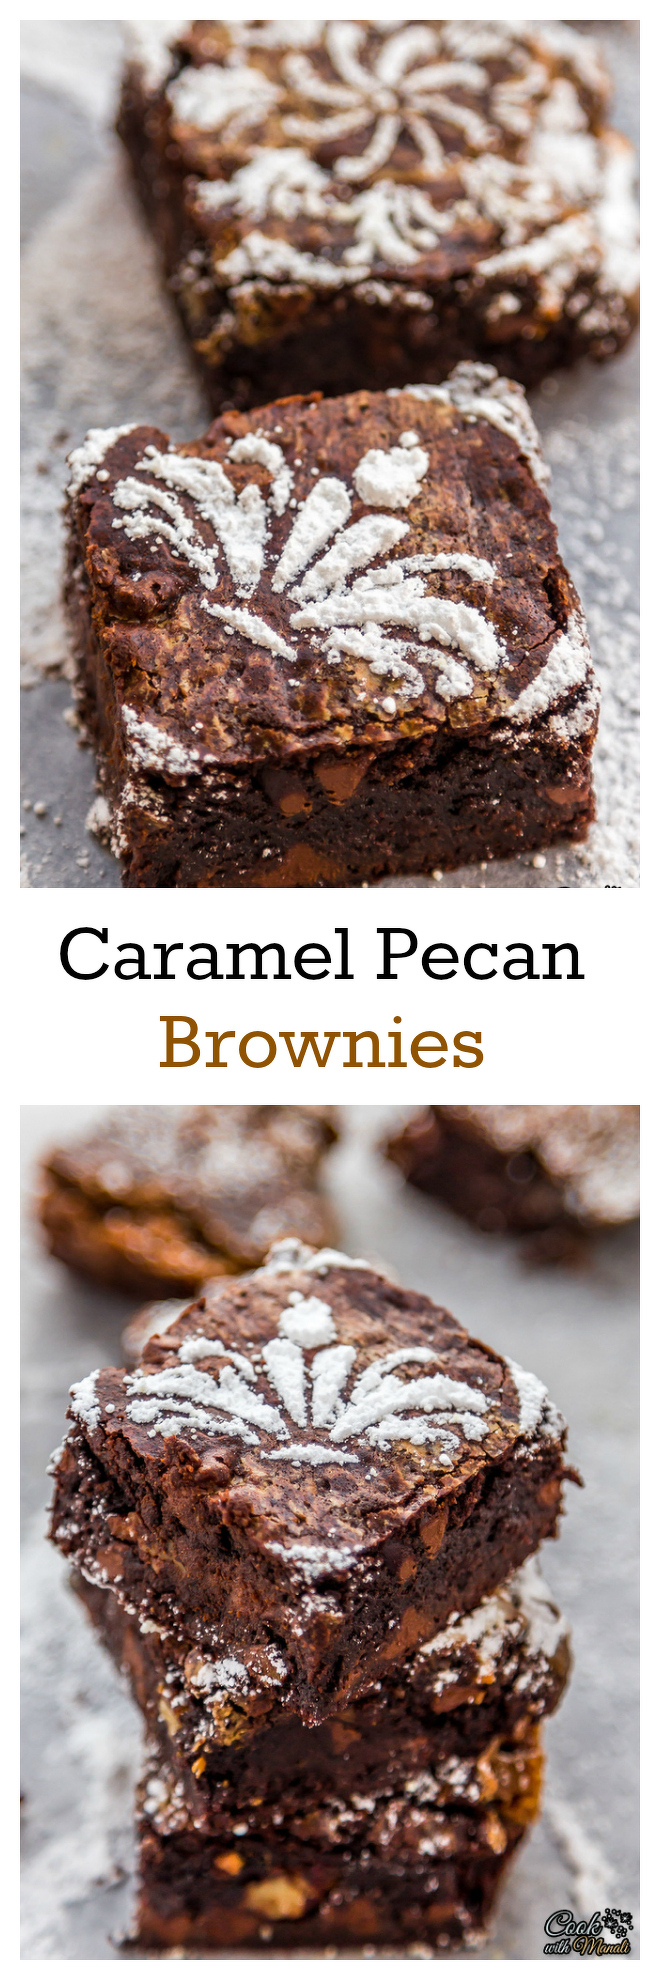 Caramel-Pecan-Brownies-Collage-nocwm